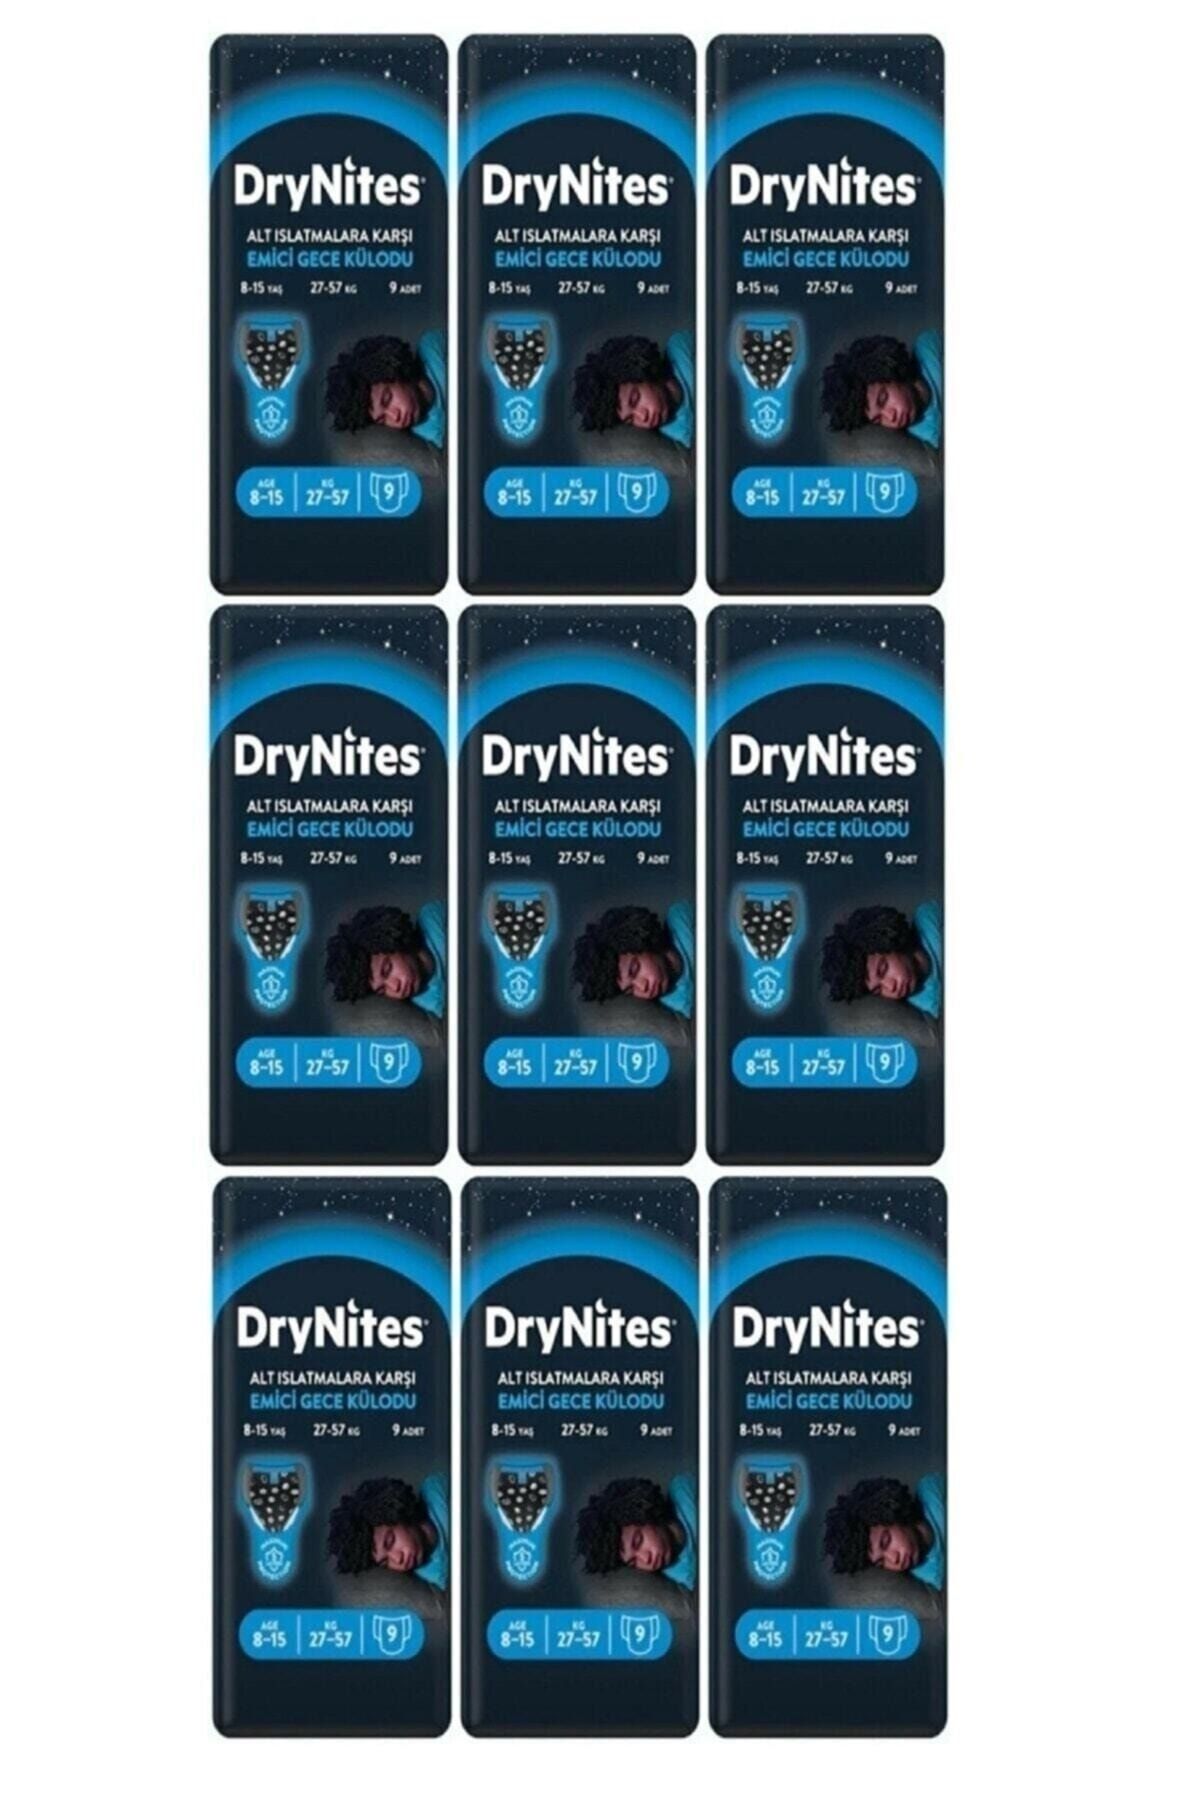 DryNites Erkek Emici Gece Külodu 8-15 Yaş 27-57 Kg 9lu * 9 Paket * 81 Adet (3 Koli)